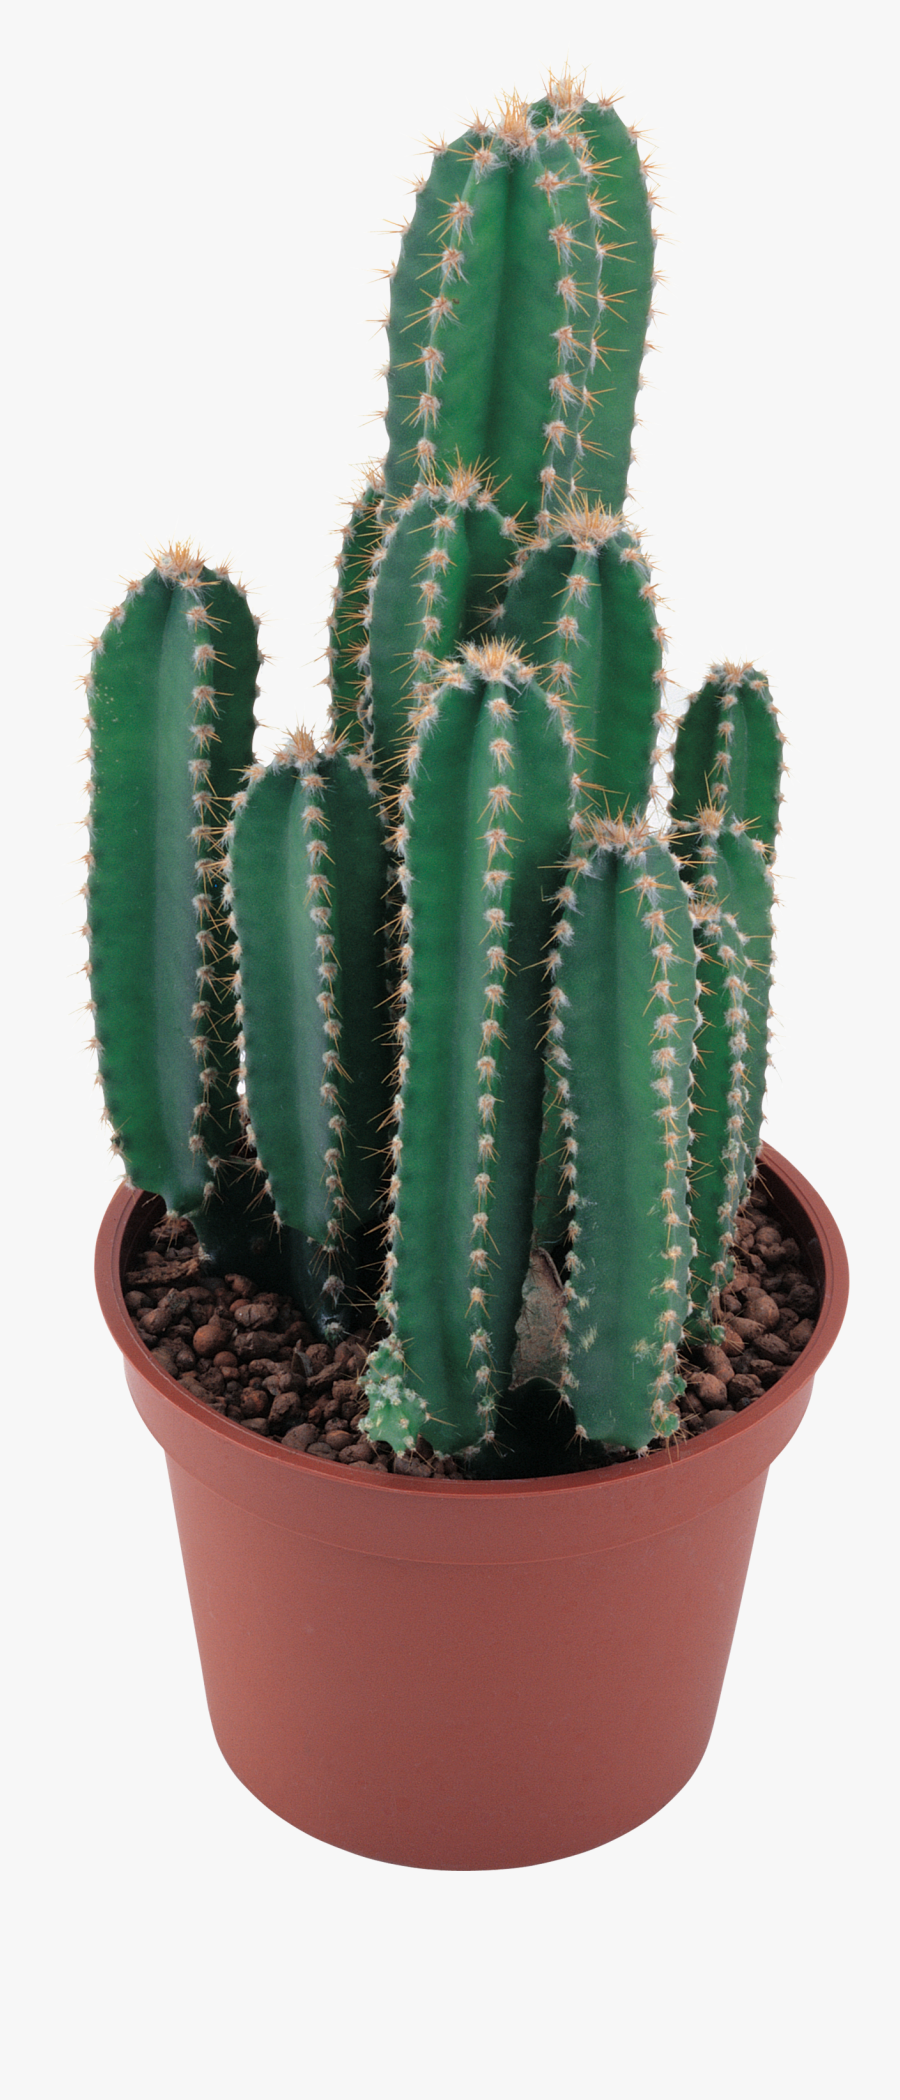 Cactus Png Image - Cactus Plant No Background, Transparent Clipart